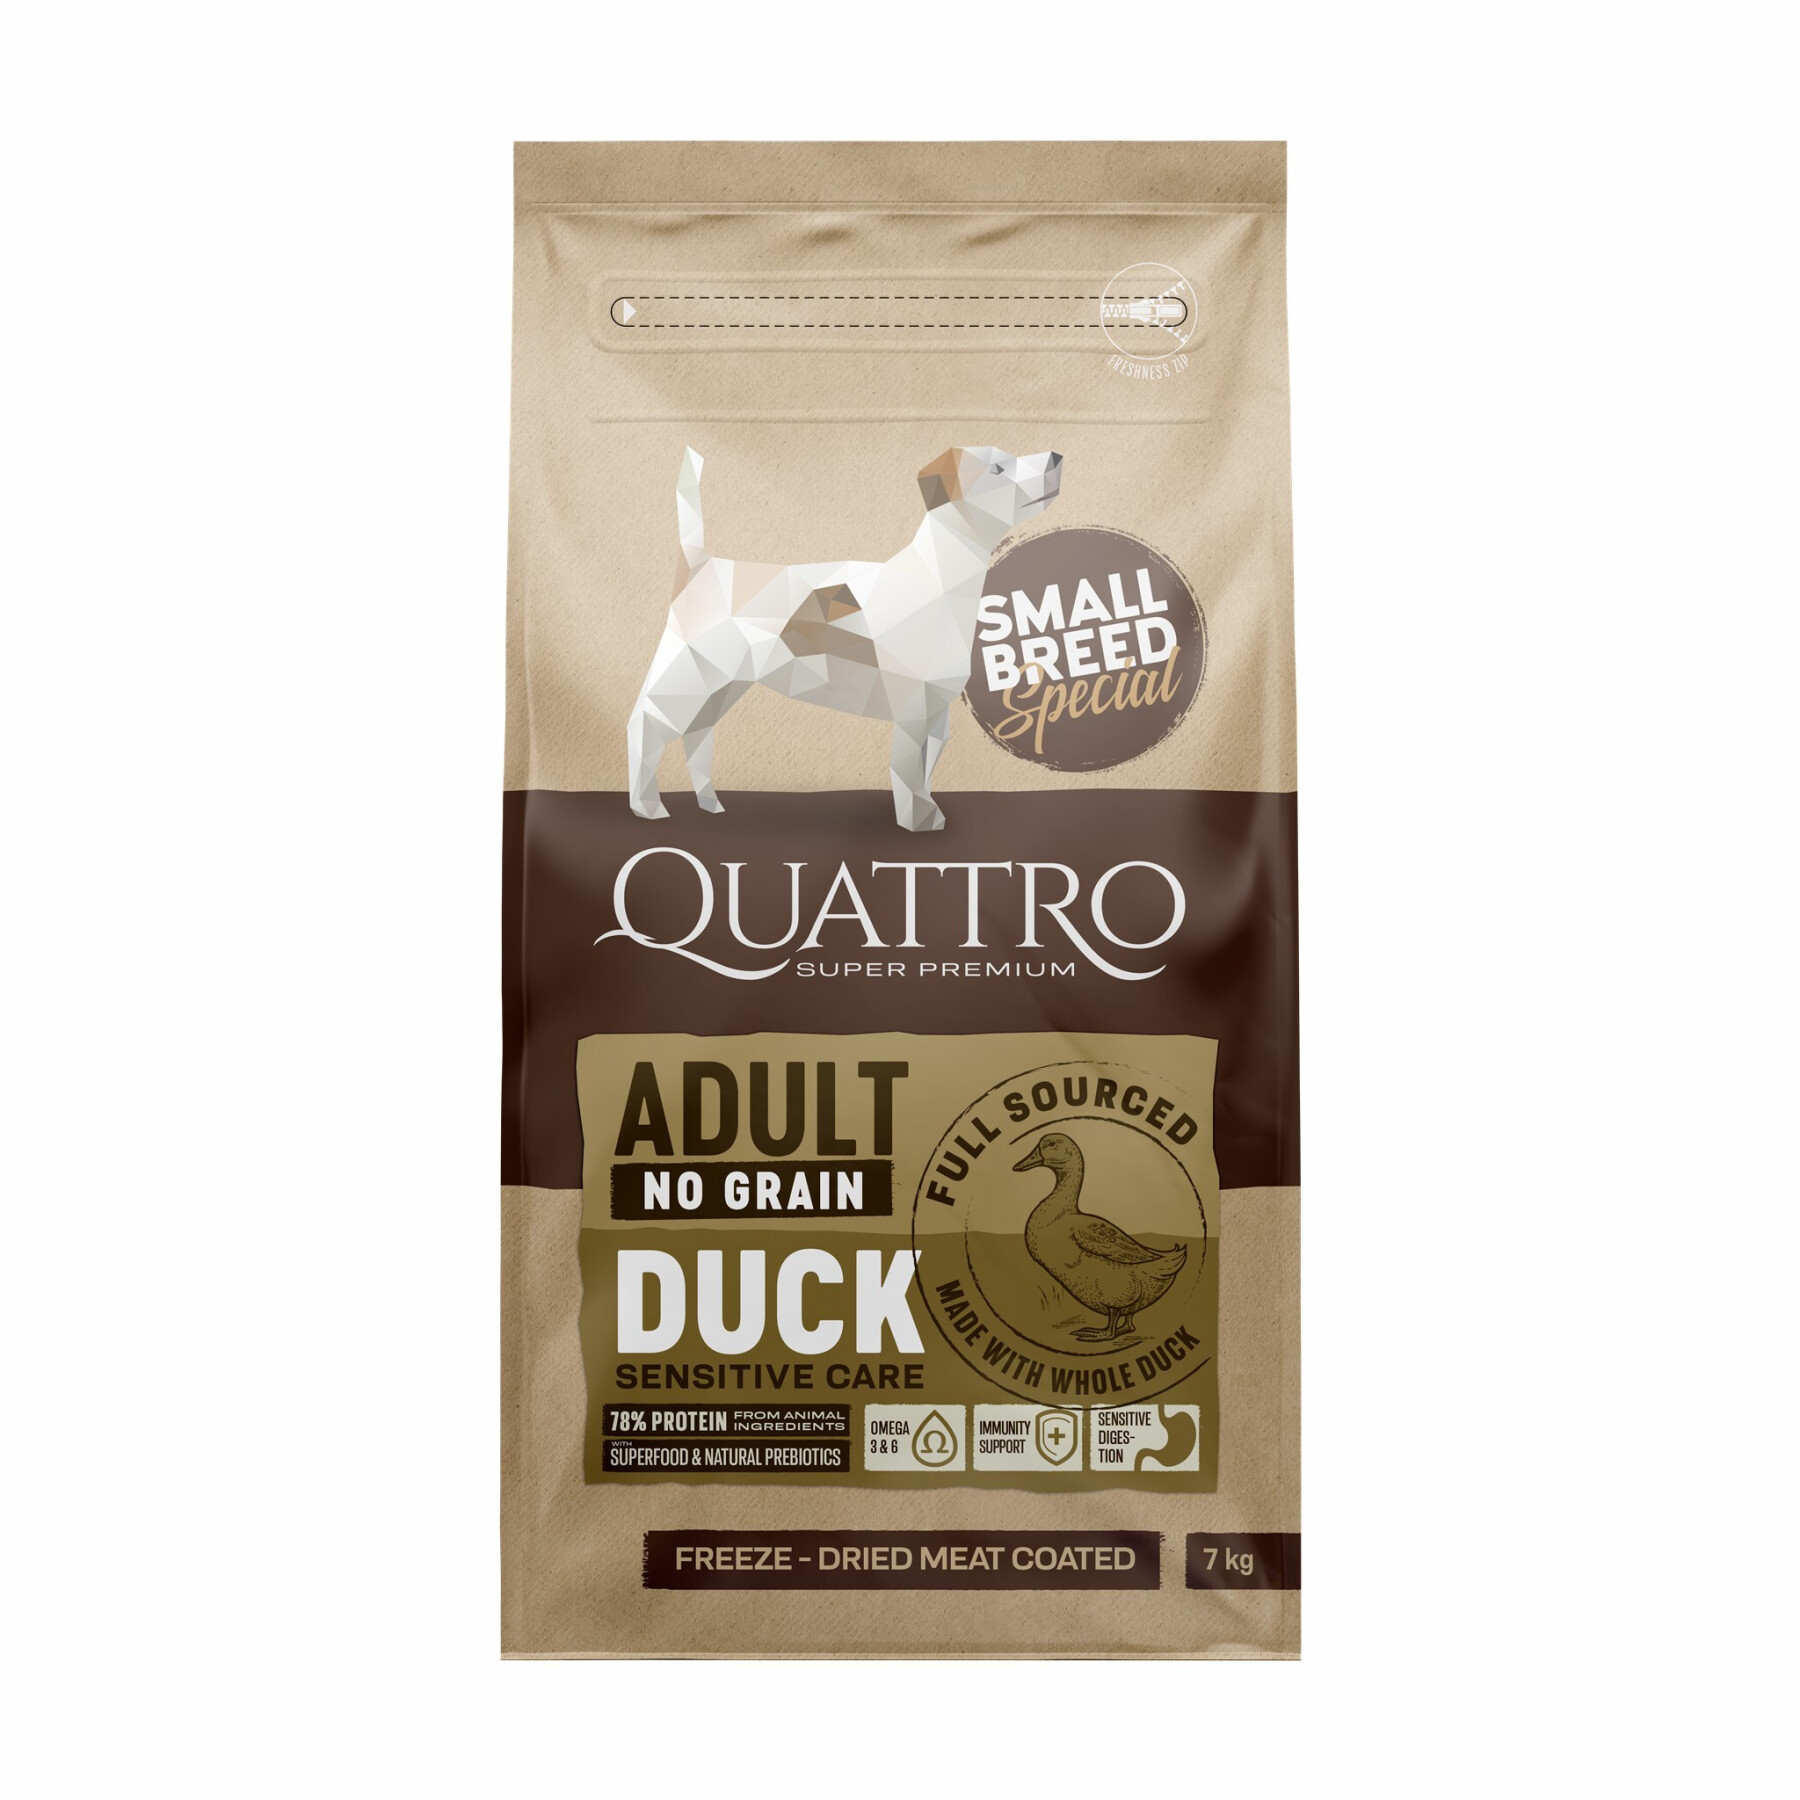 Small breed duck dog food BUBU Pets Quatro Super Premium